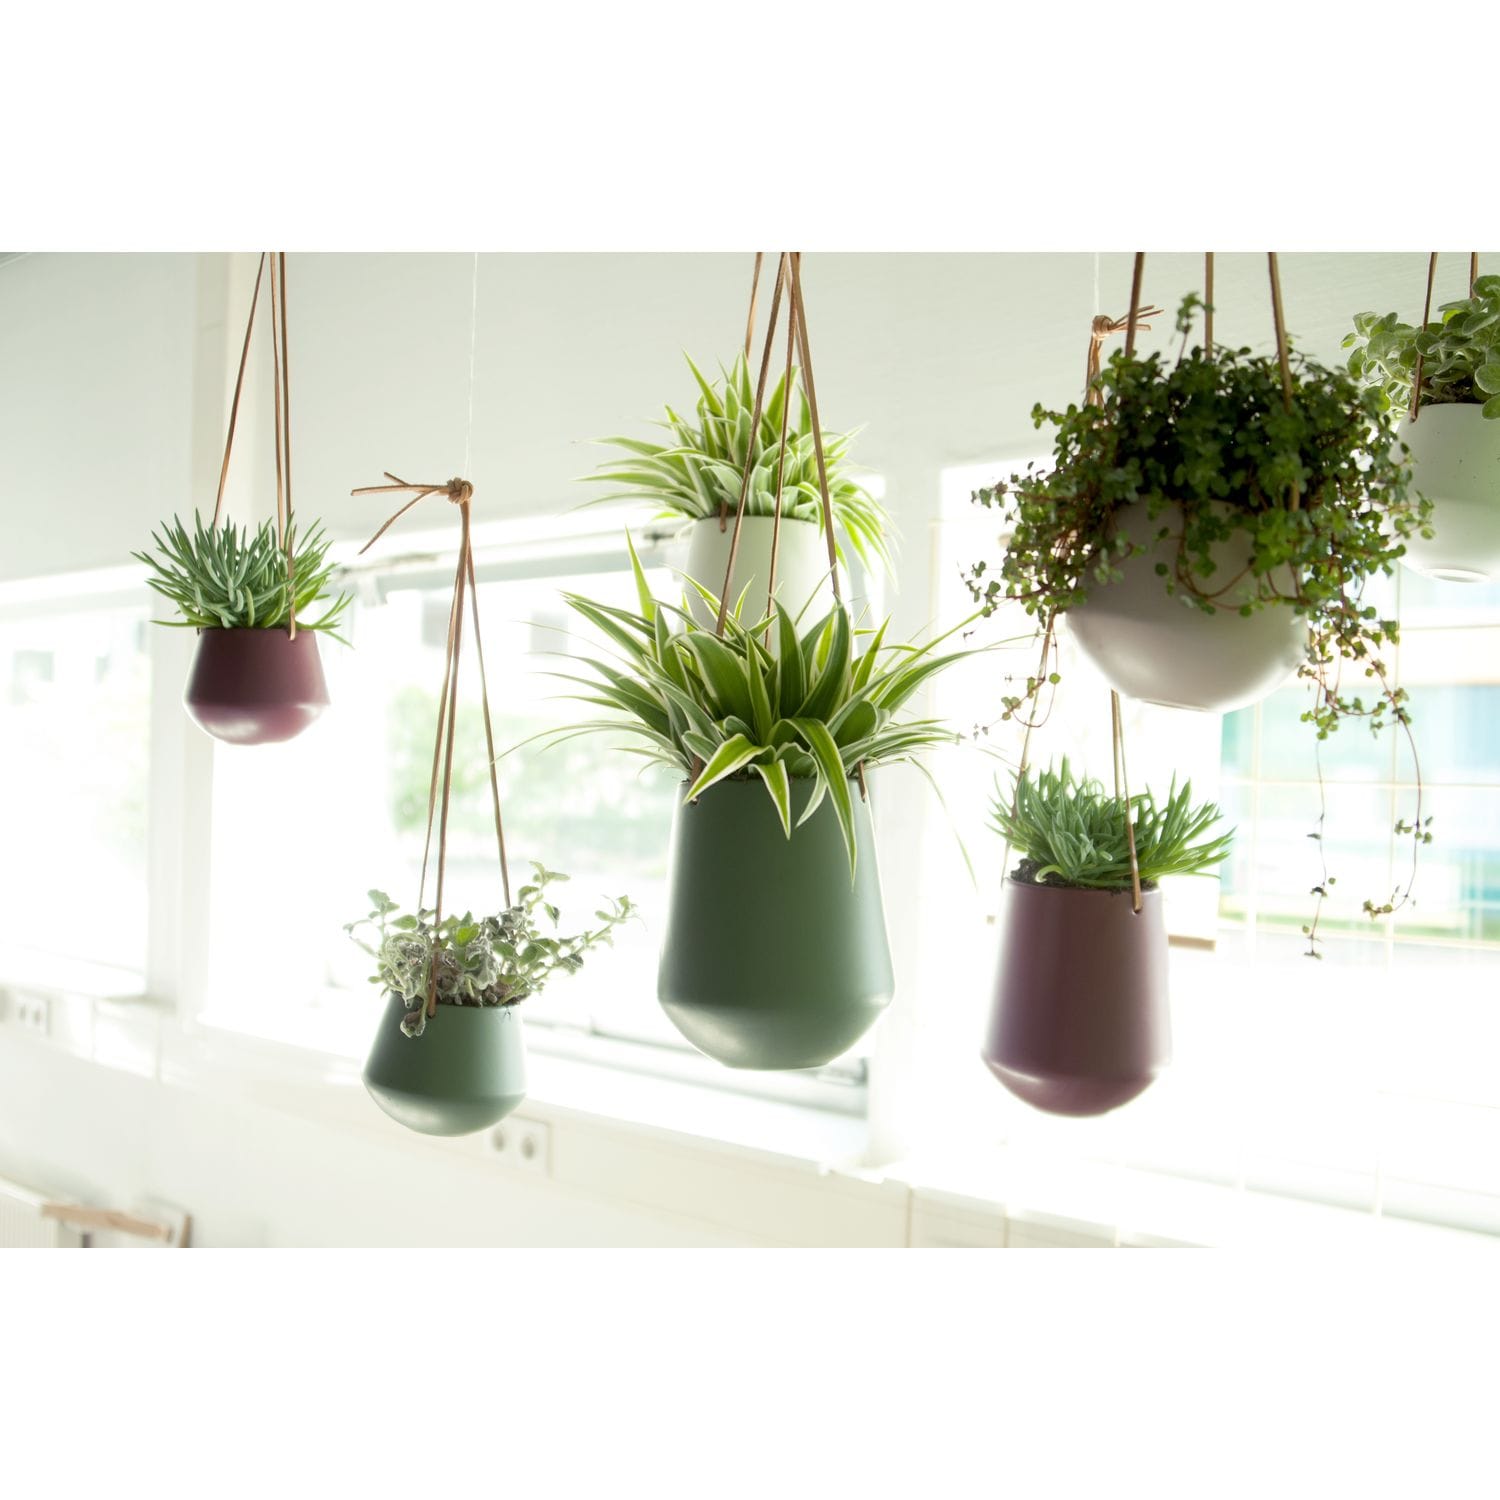 Le cache-pot : l'accessoire indispensable pour sublimer vos plantes !